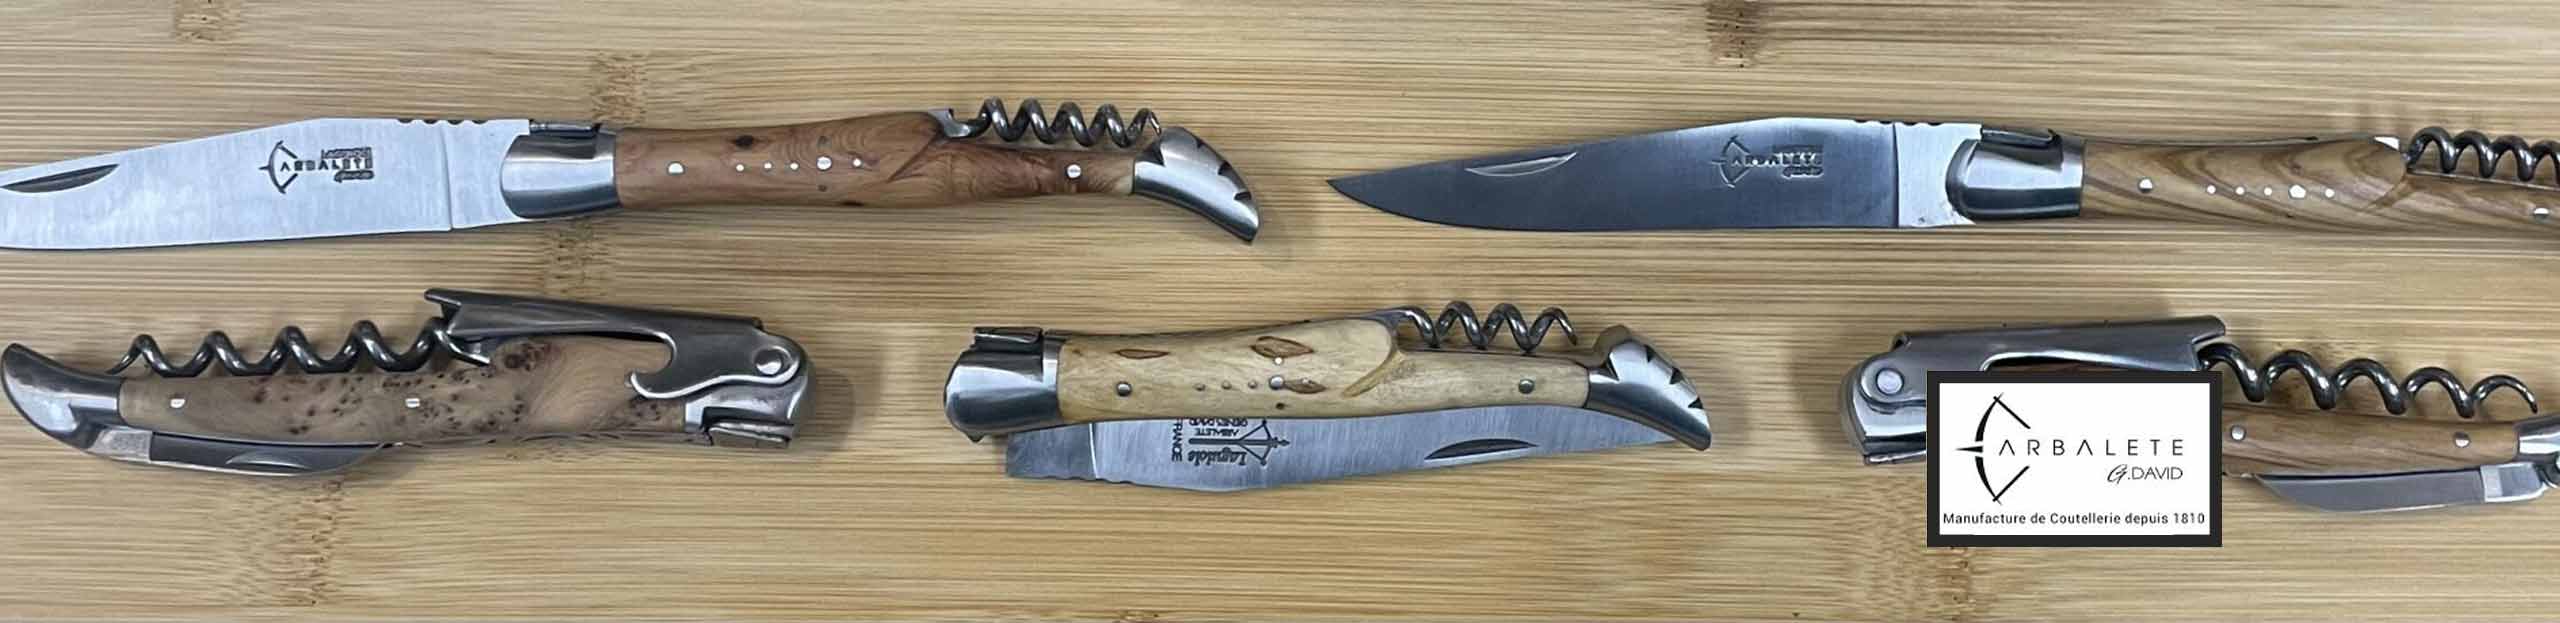 artisan coutellier laguiole g david couteau